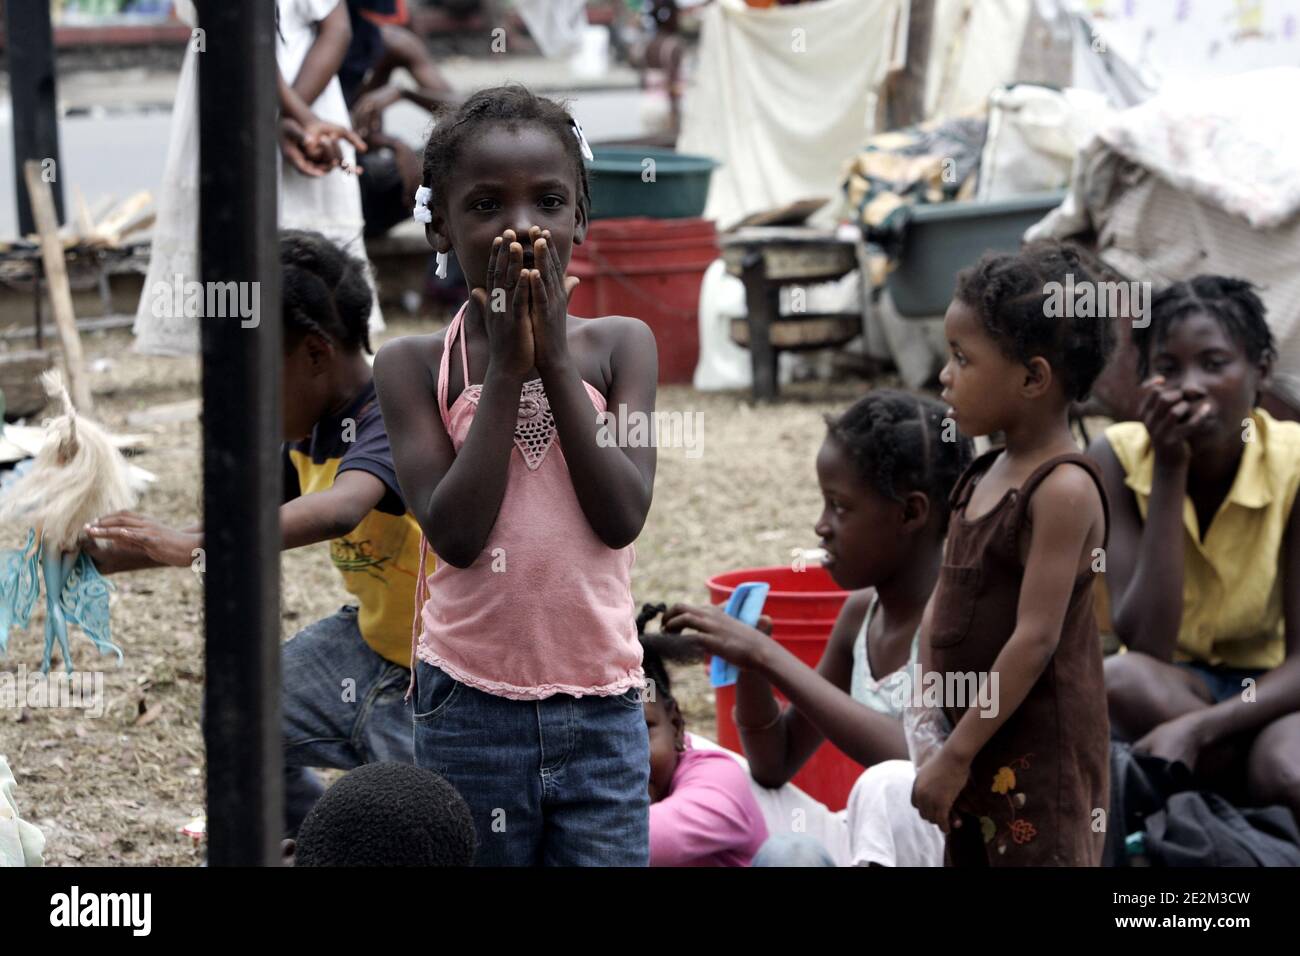 Port-au-Prince, Haiti, 19. Januar 2010. Das Bild zeigt die Nachwirkungen in Port-au-Prince nach einem verheerenden Erdbeben am 12. Januar 2010. UN und Hilfsorganisationen warnten am 14. Januar 2010, dass sie sich einer "großen logistischen Herausforderung" gegenüber sehen, um den Überlebenden des tödlichen Erdbebens in Haiti wesentliche Hilfe zu verschaffen. Foto von Sebastien Dufour/ABACAPRESS.COM Stockfoto